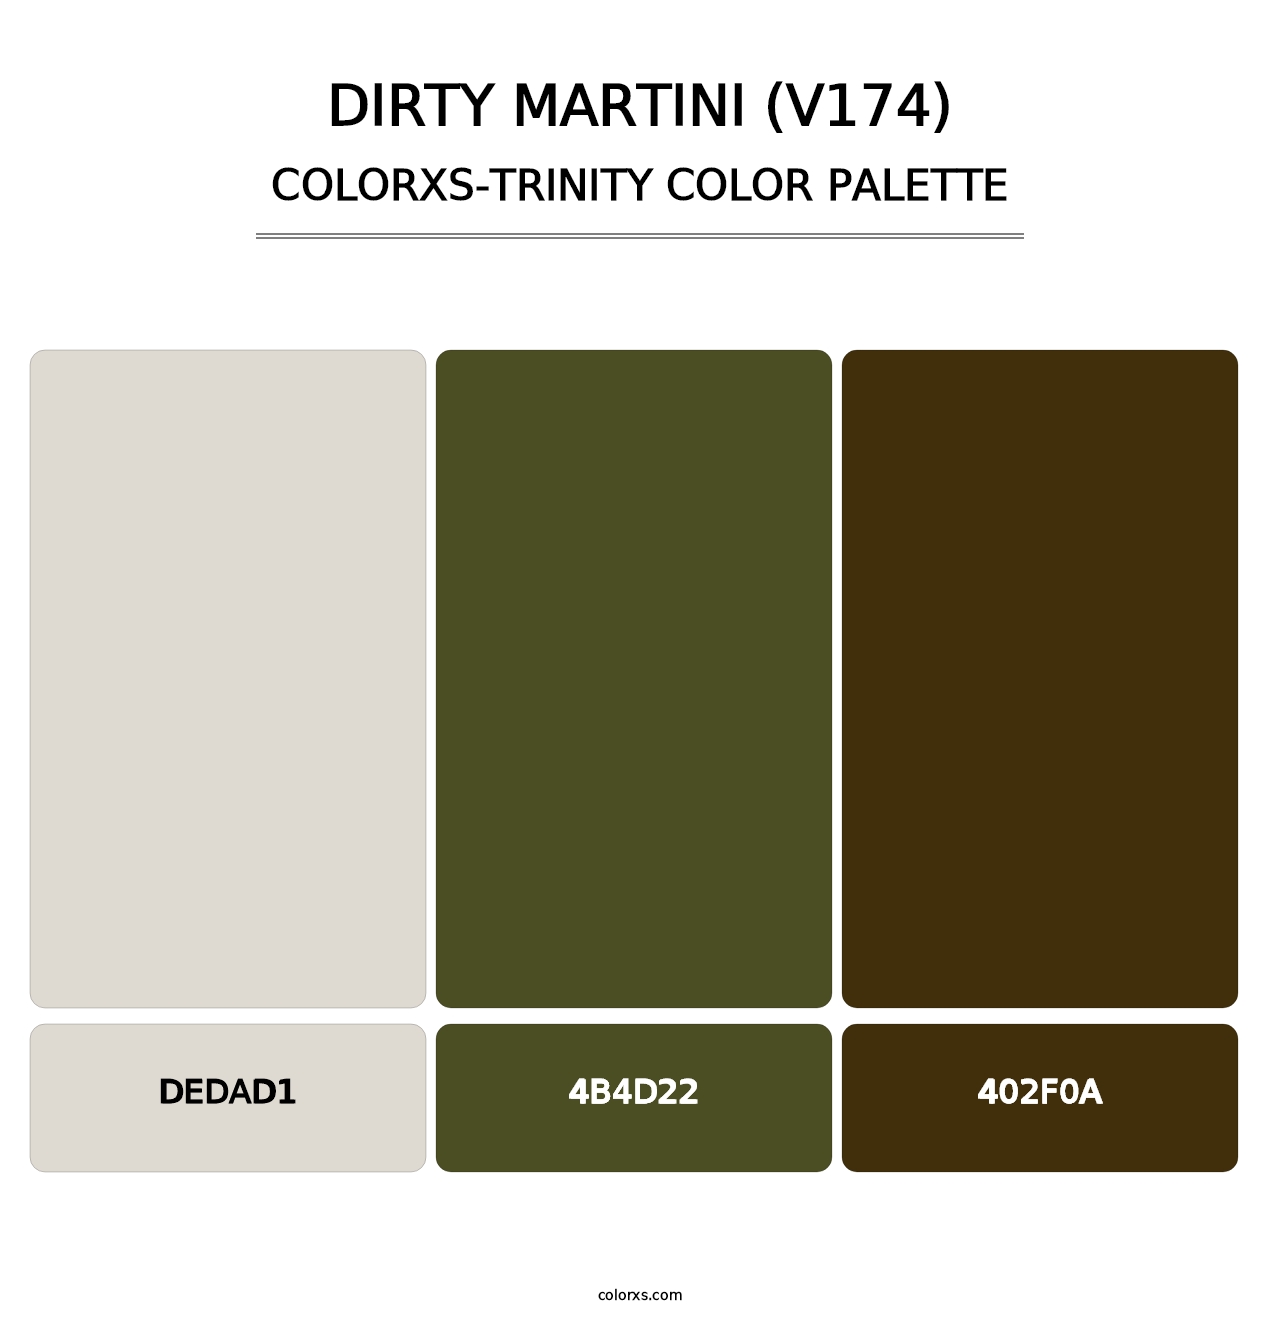 Dirty Martini (V174) - Colorxs Trinity Palette